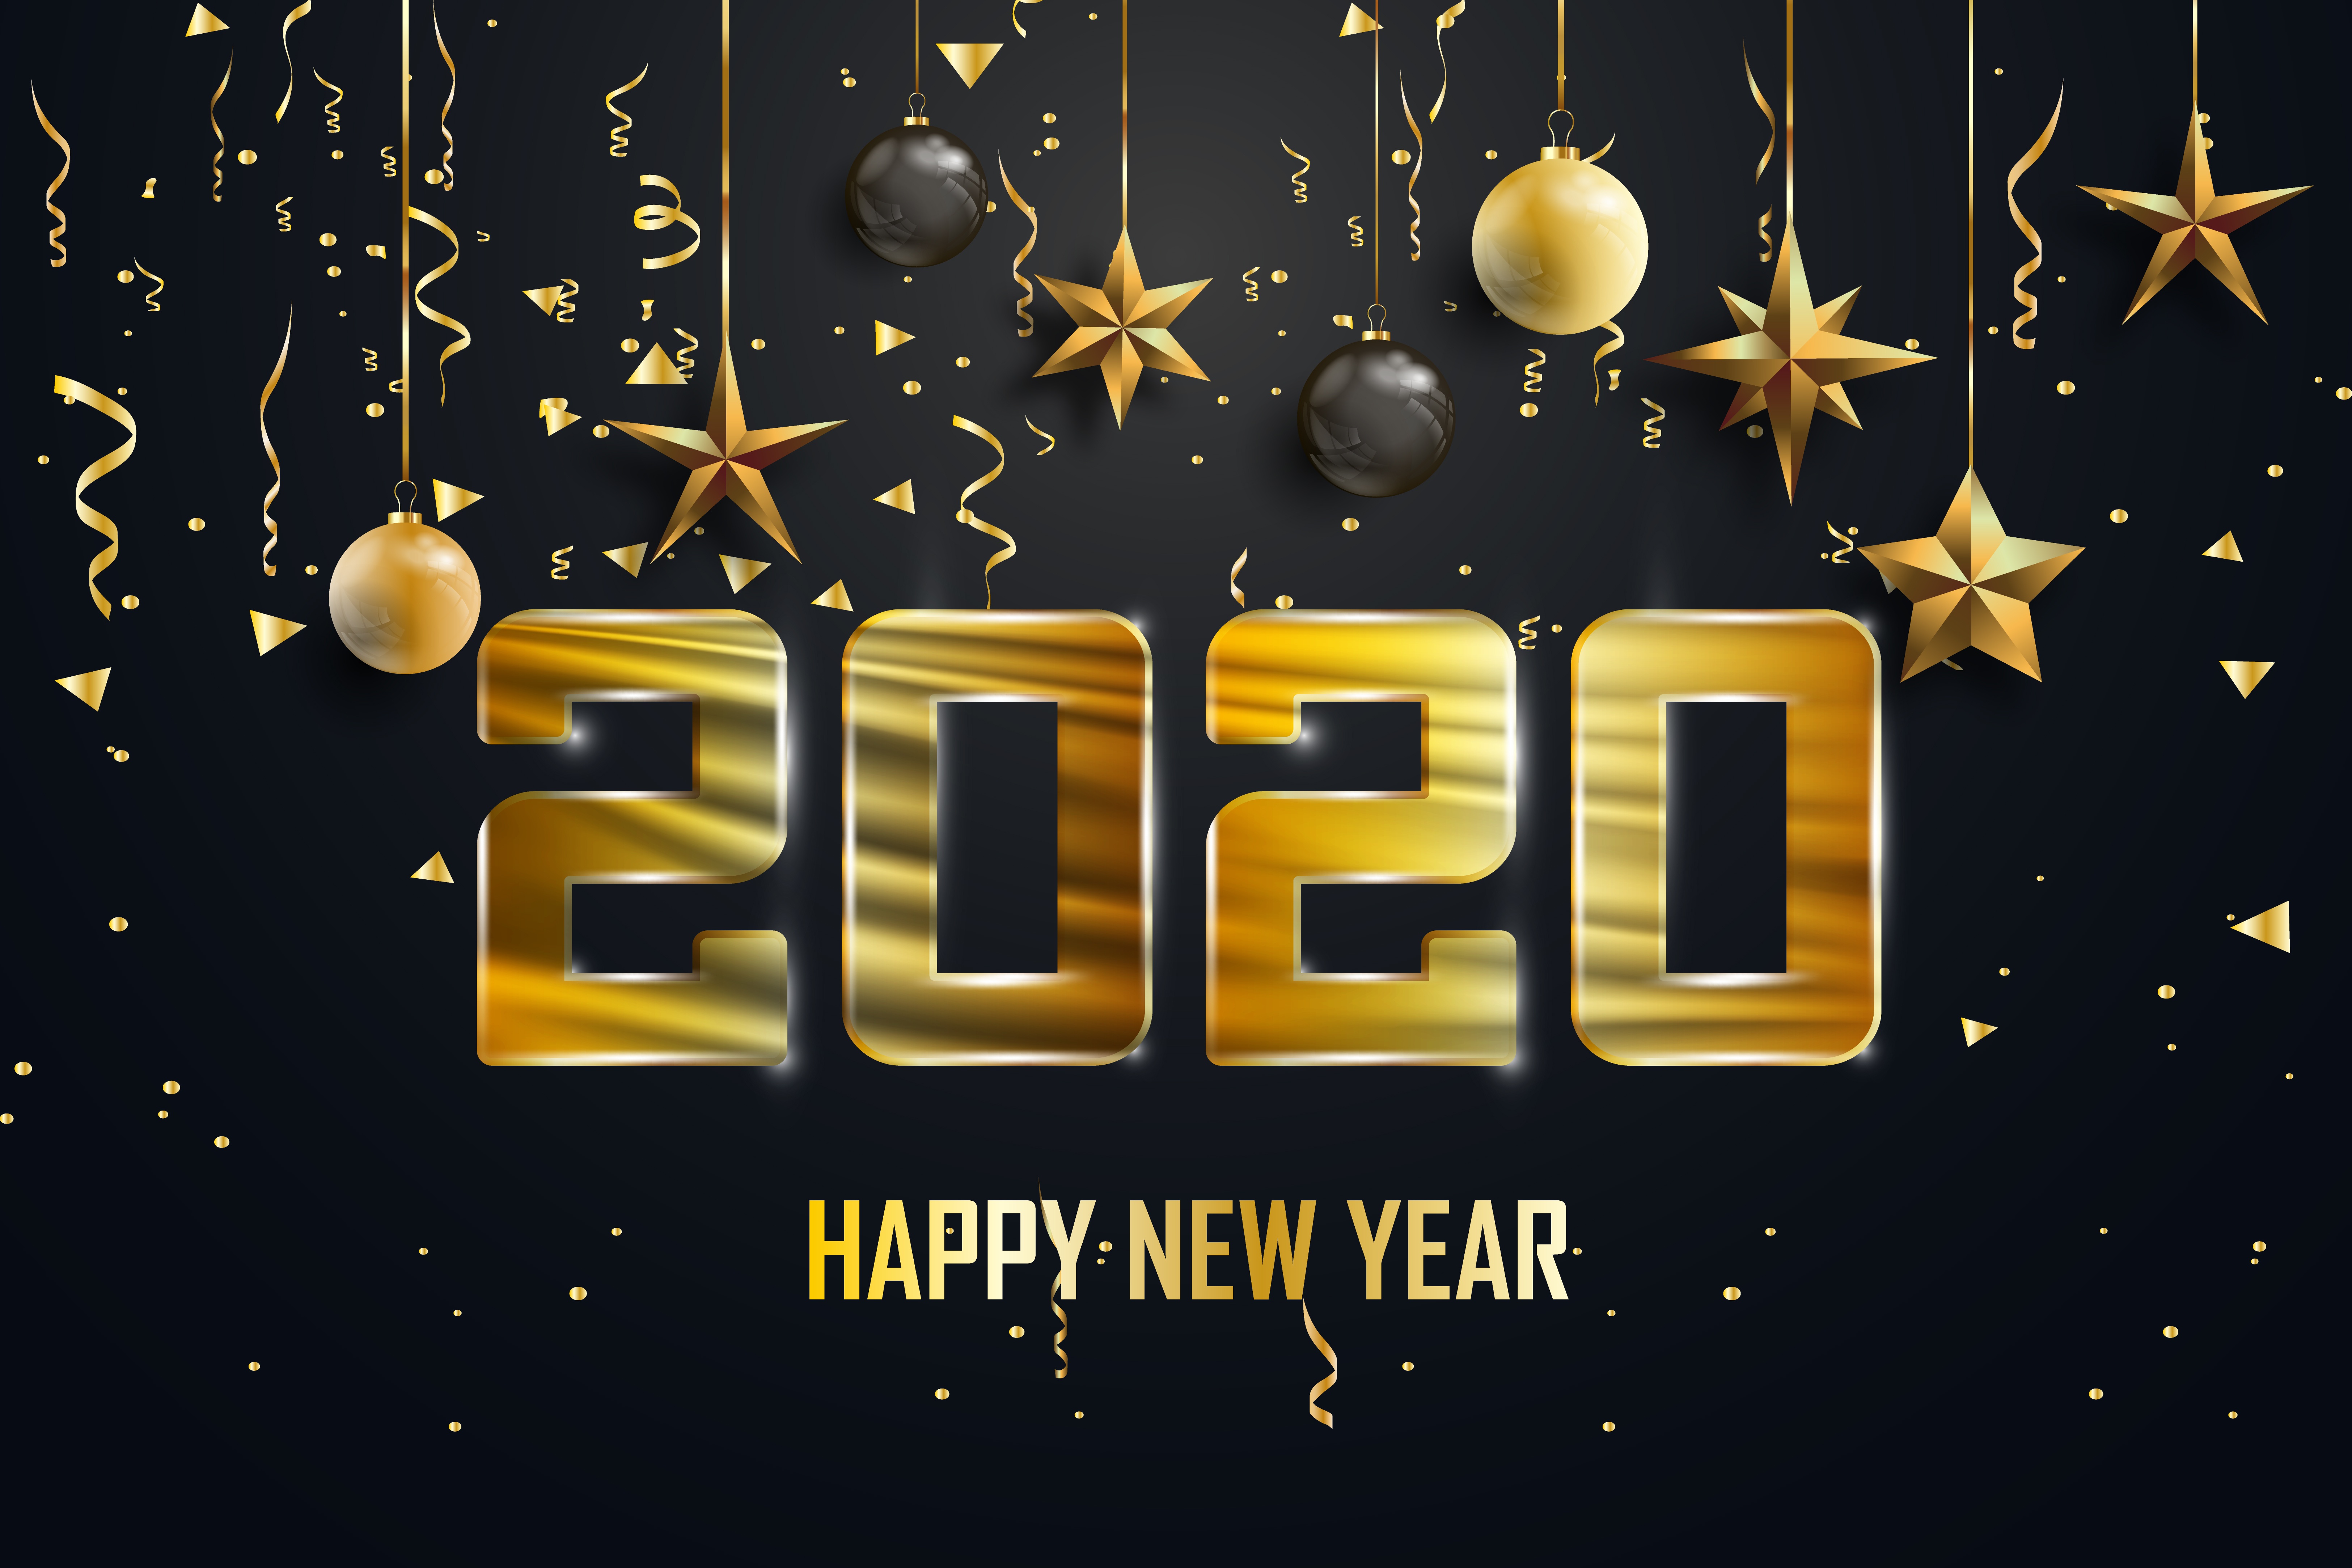 Скачать обои Новый Год 2020 на телефон бесплатно